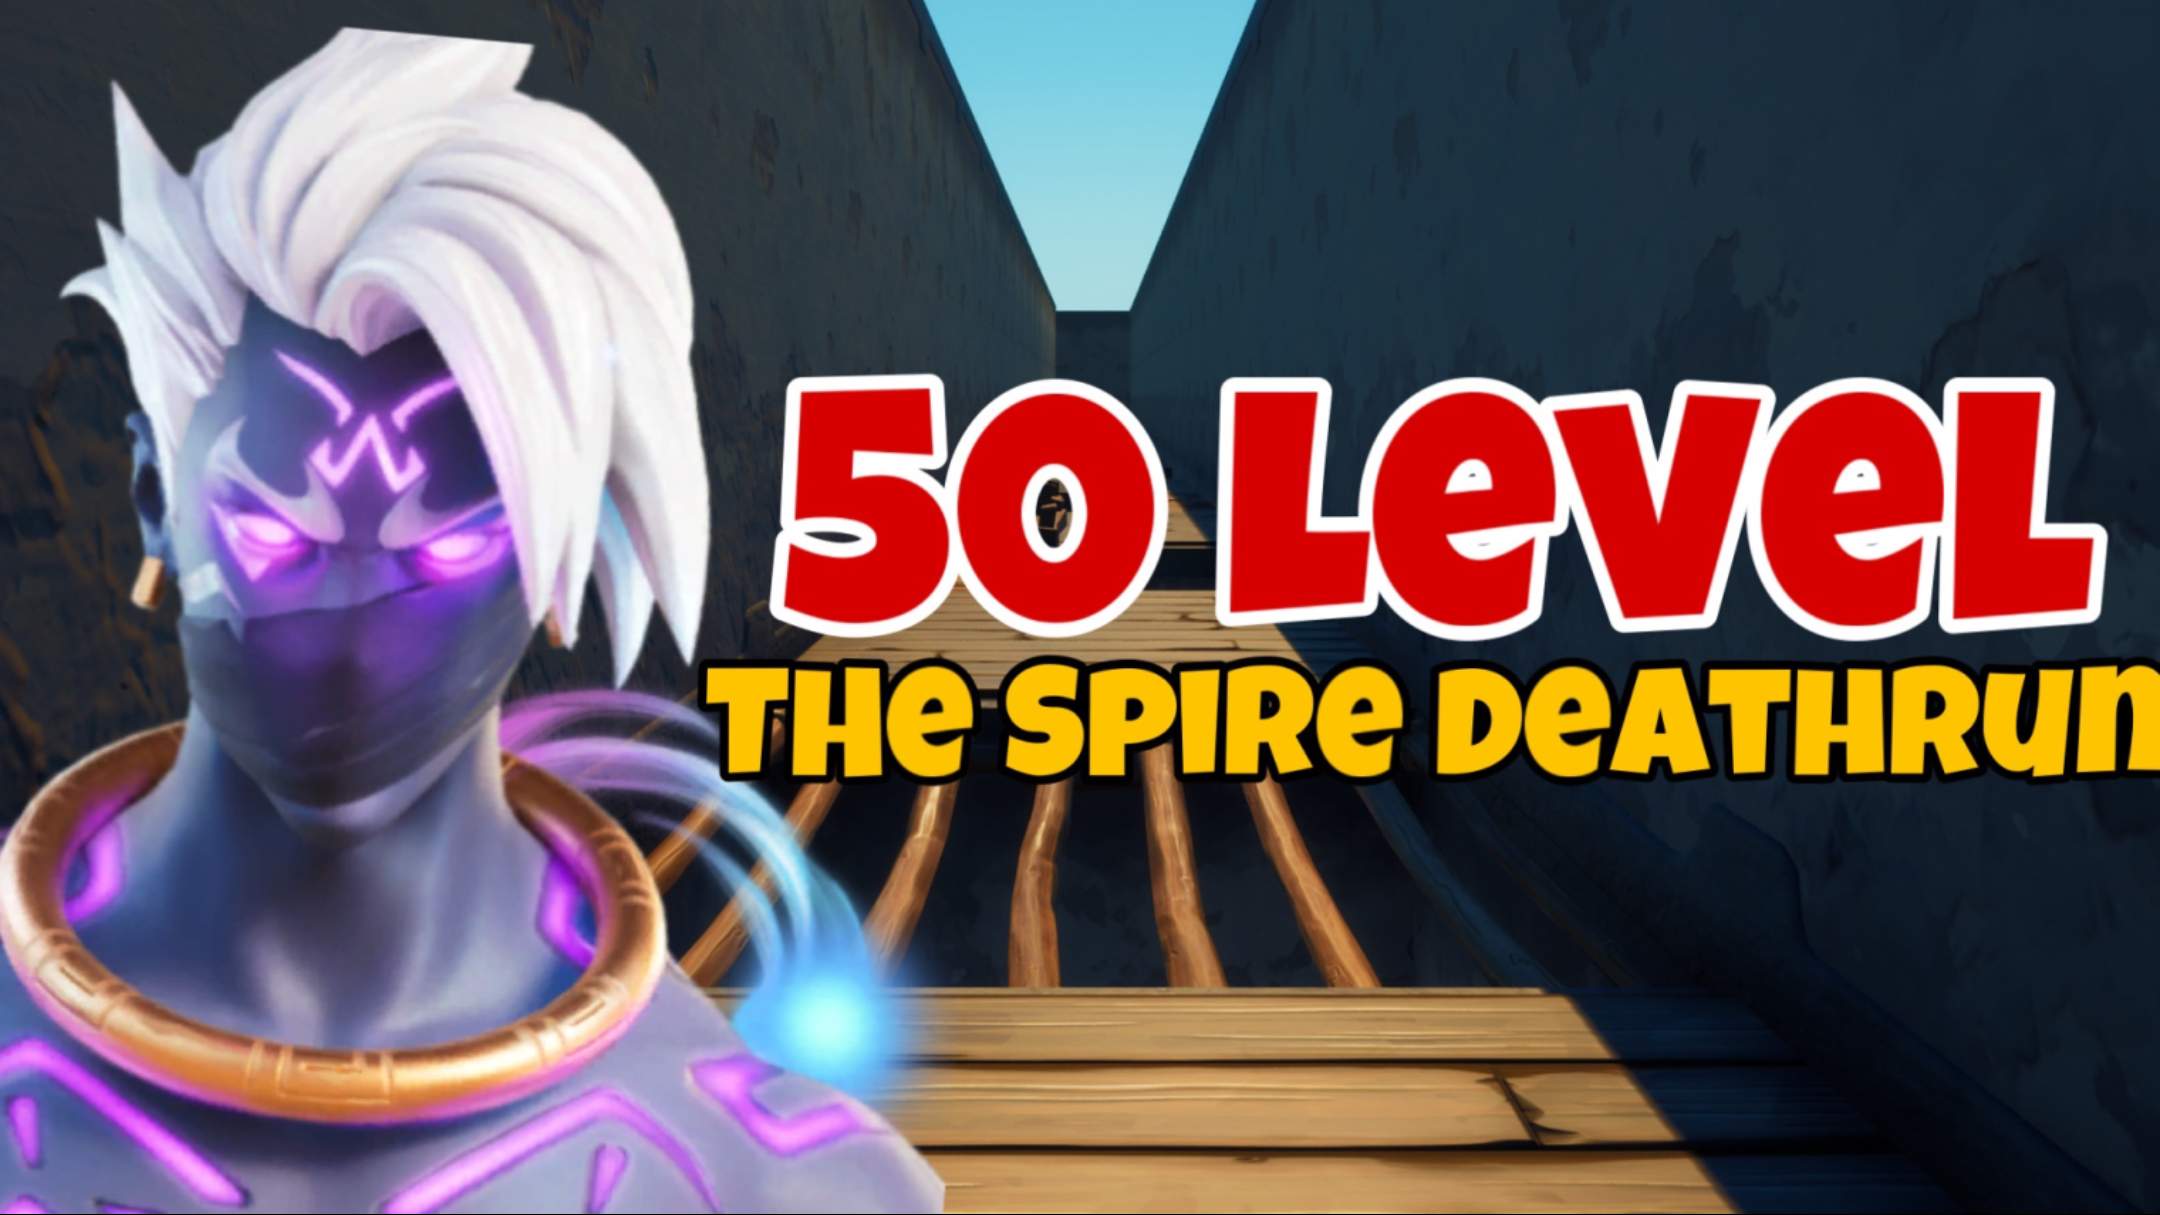 50 LEVEL THE SPIRE DEATHRUN